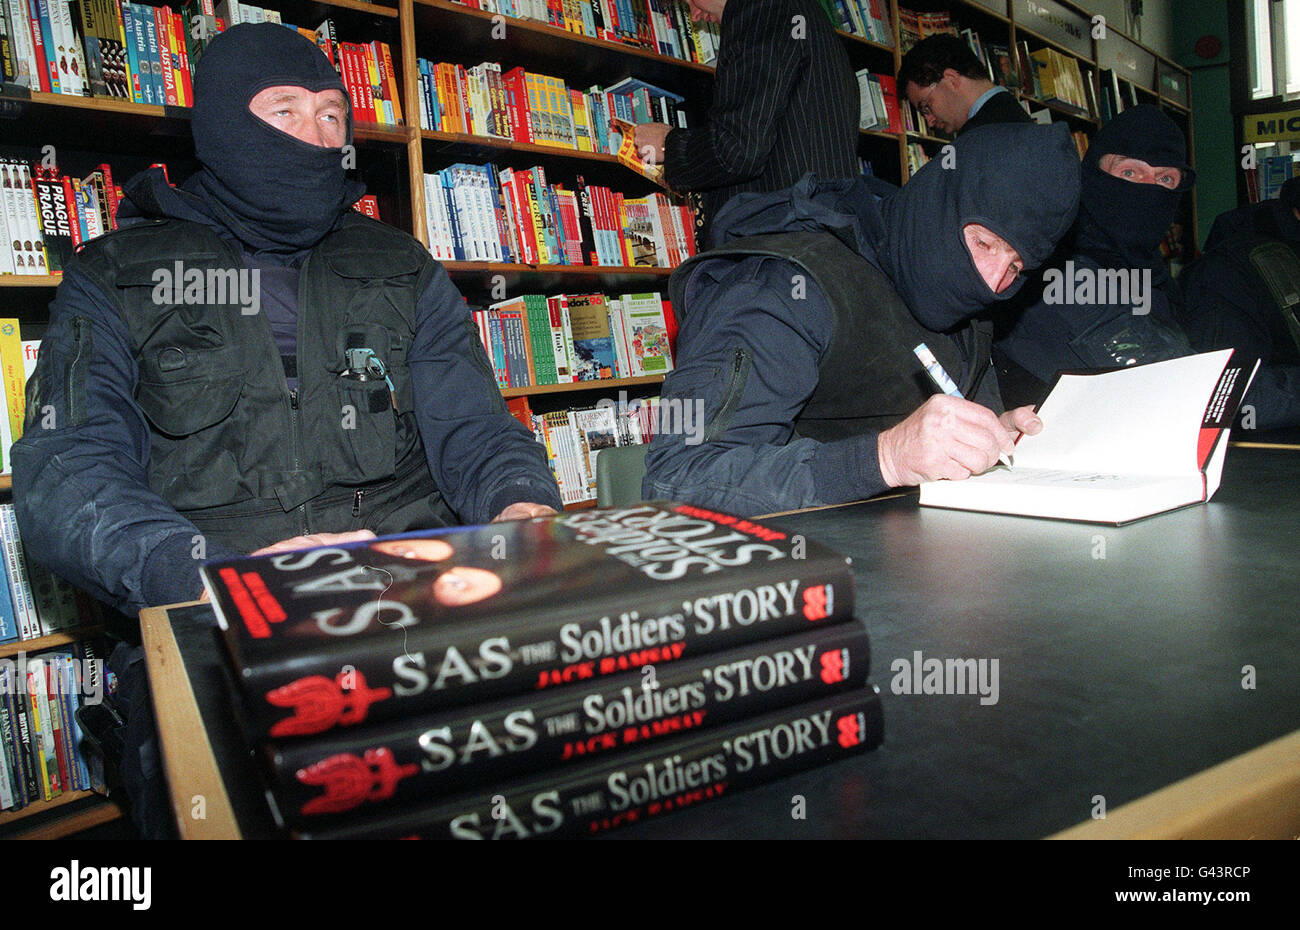 Drei ehemalige Mitglieder der SAS unterschreiben Kopien ihres Buches "AS: The Soldiers' Story" in einem Buchladen in London, nachdem sie sich heute (Thur) 80 Meter vor einem leeren Bürogebäude in der Nähe der Fenchurch Street abseilen. Die drei - die ihre Namen als (l-r) Rusty, Mac und Johnny Two Combs gaben - versäumten es, einige nahe gelegene Büroangestellte zu amüsieren, die durch ihren Eingang in einem Gebiet erschreckt wurden, das wegen IRA-Bomben nervös war. Stockfoto